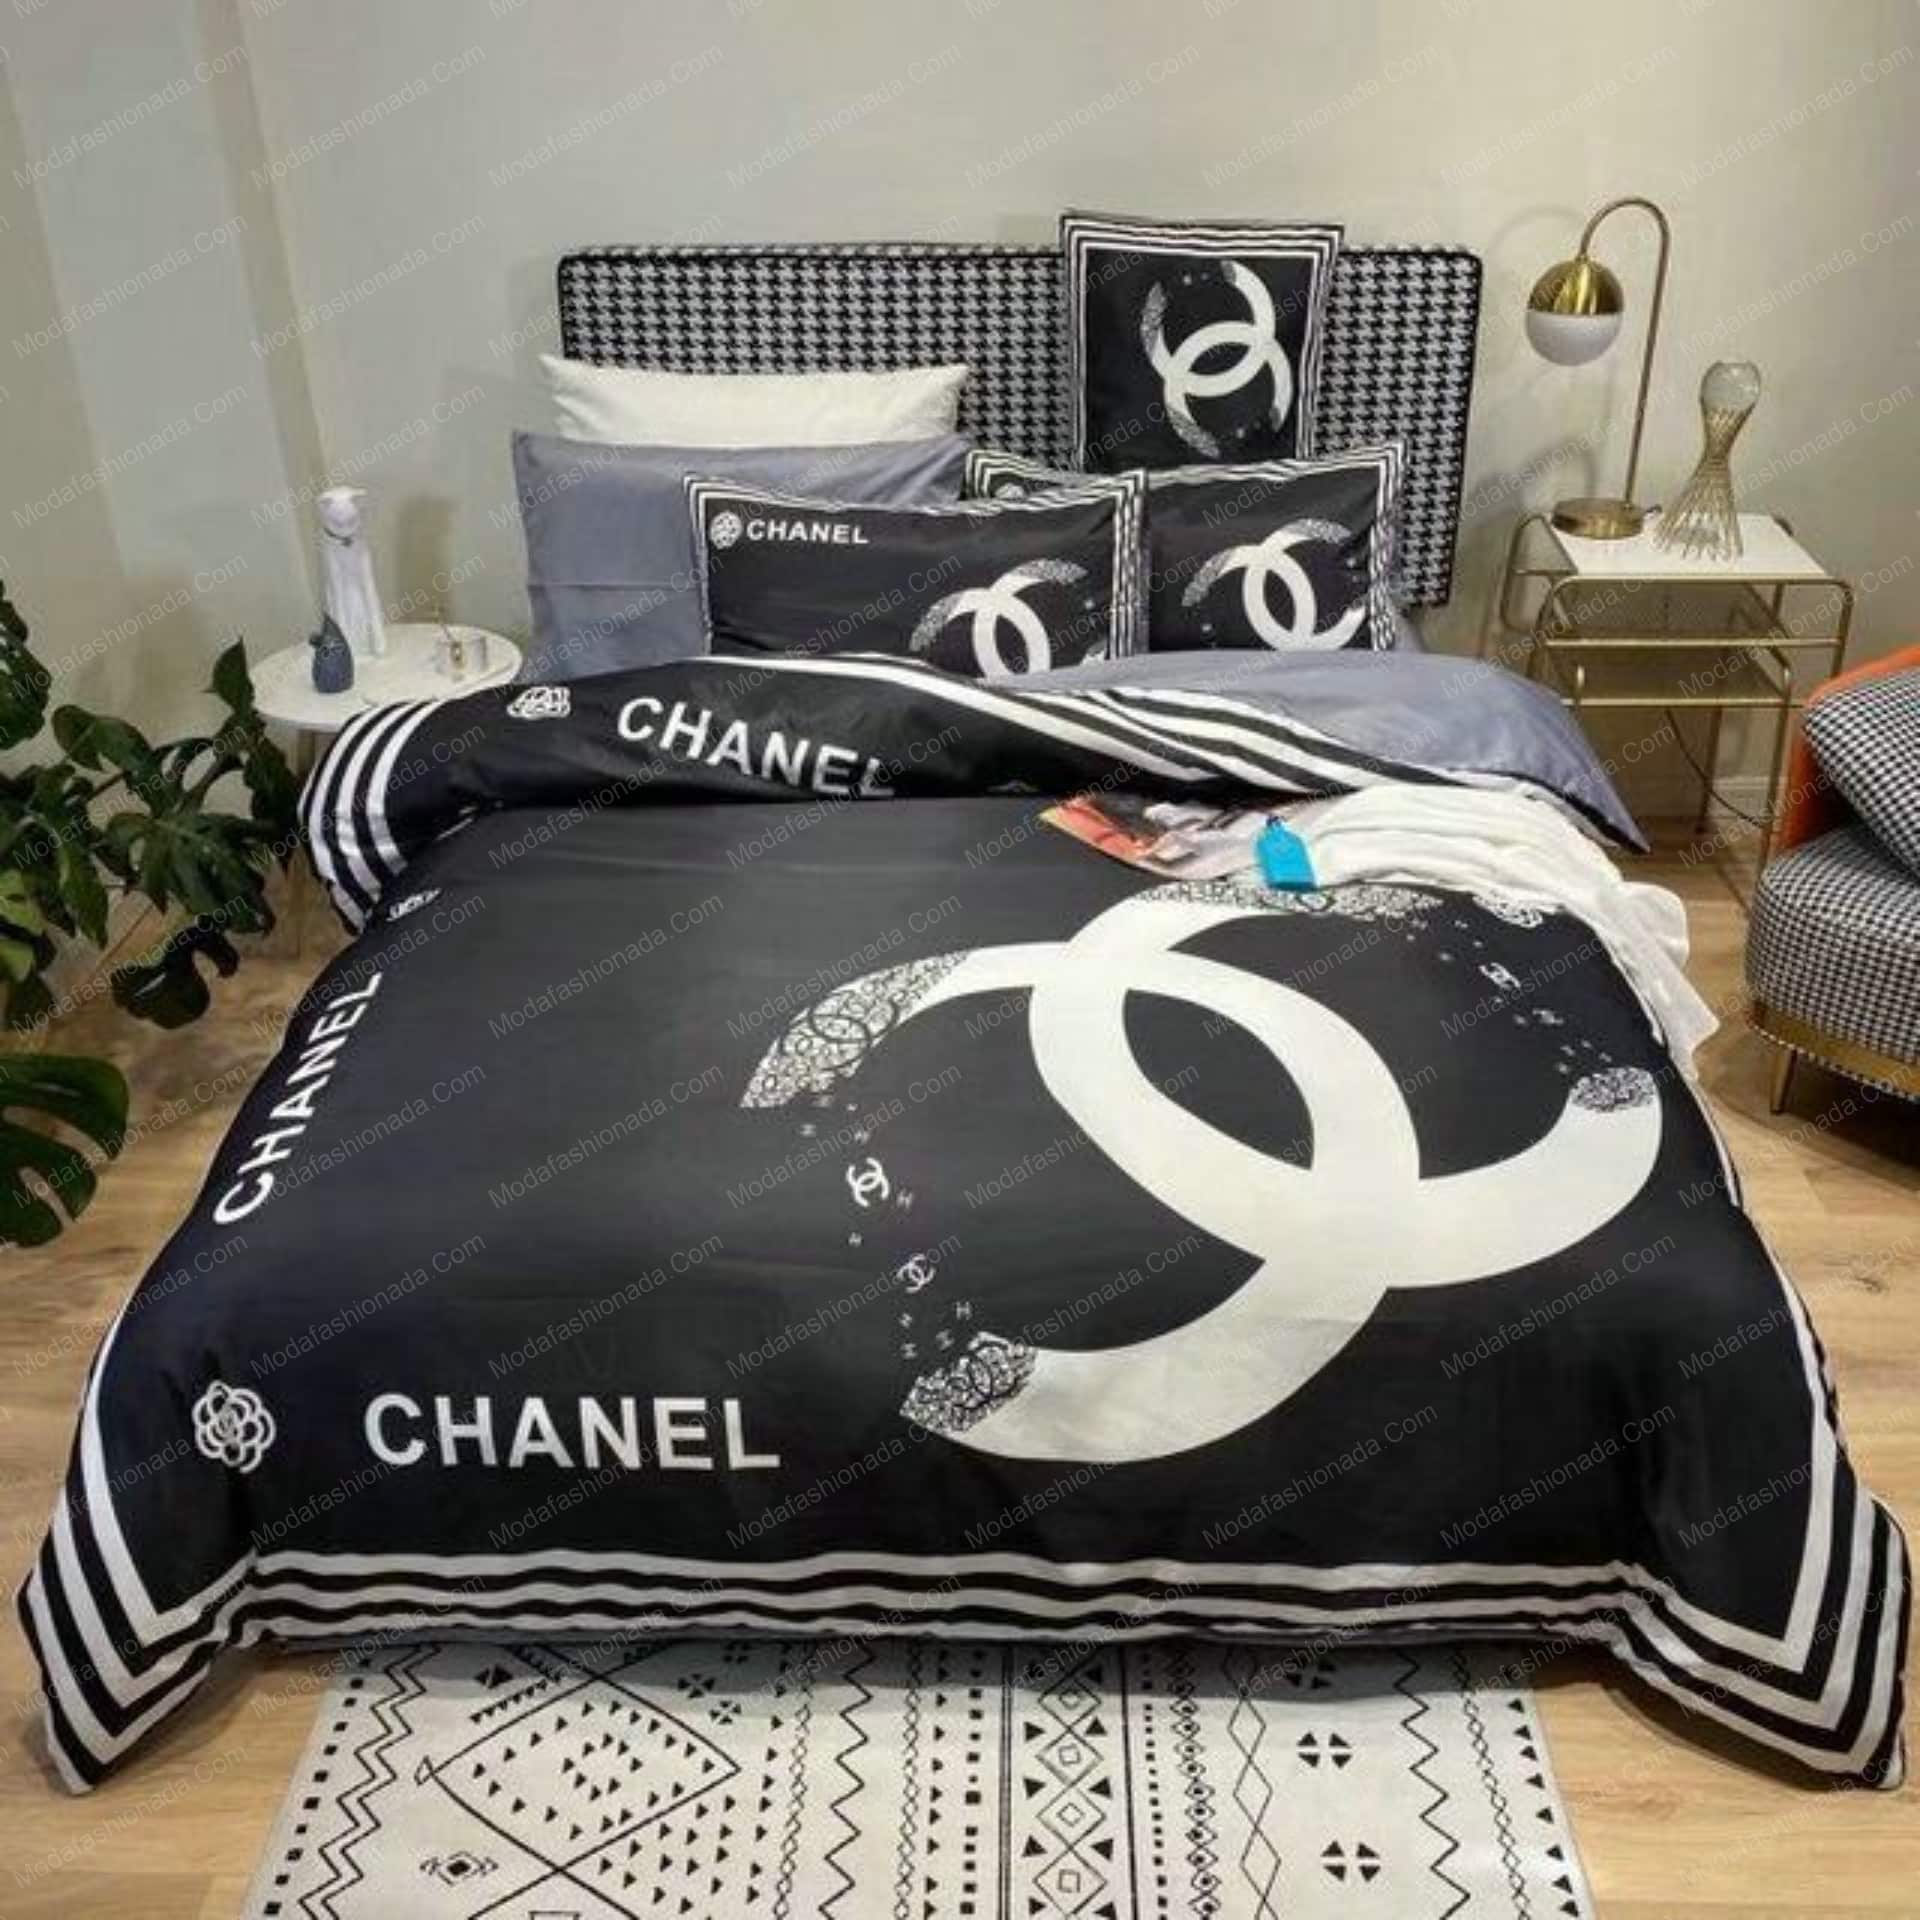 10+ Idea Chanel Bed Sets, Bedding Sets, Bedroom Sets, Bed Sheets